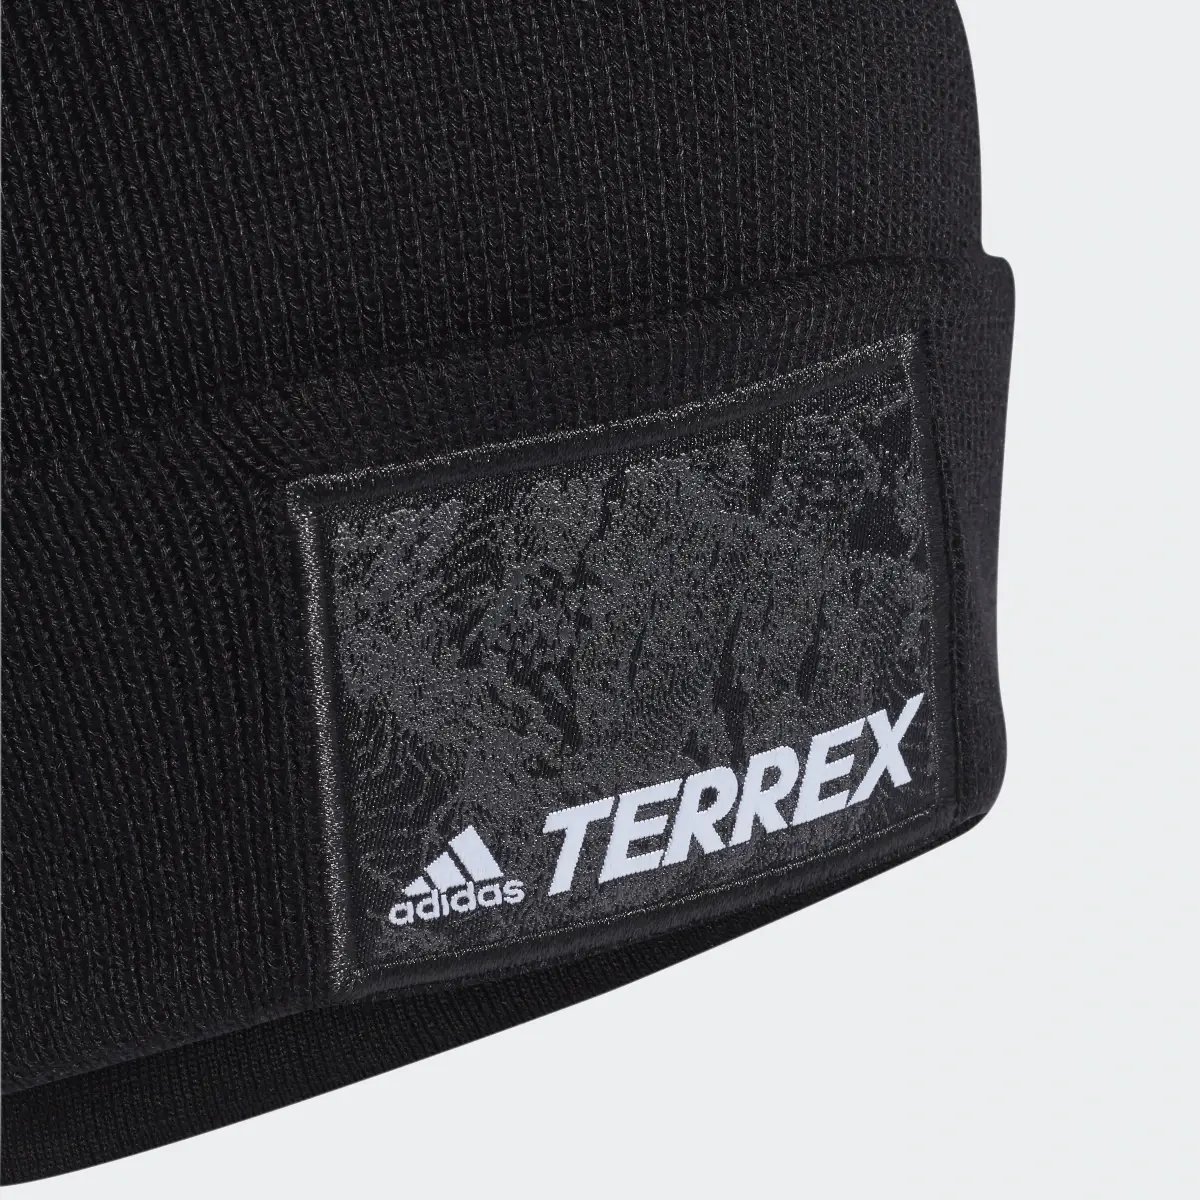 Adidas Terrex Multisport Beanie. 3